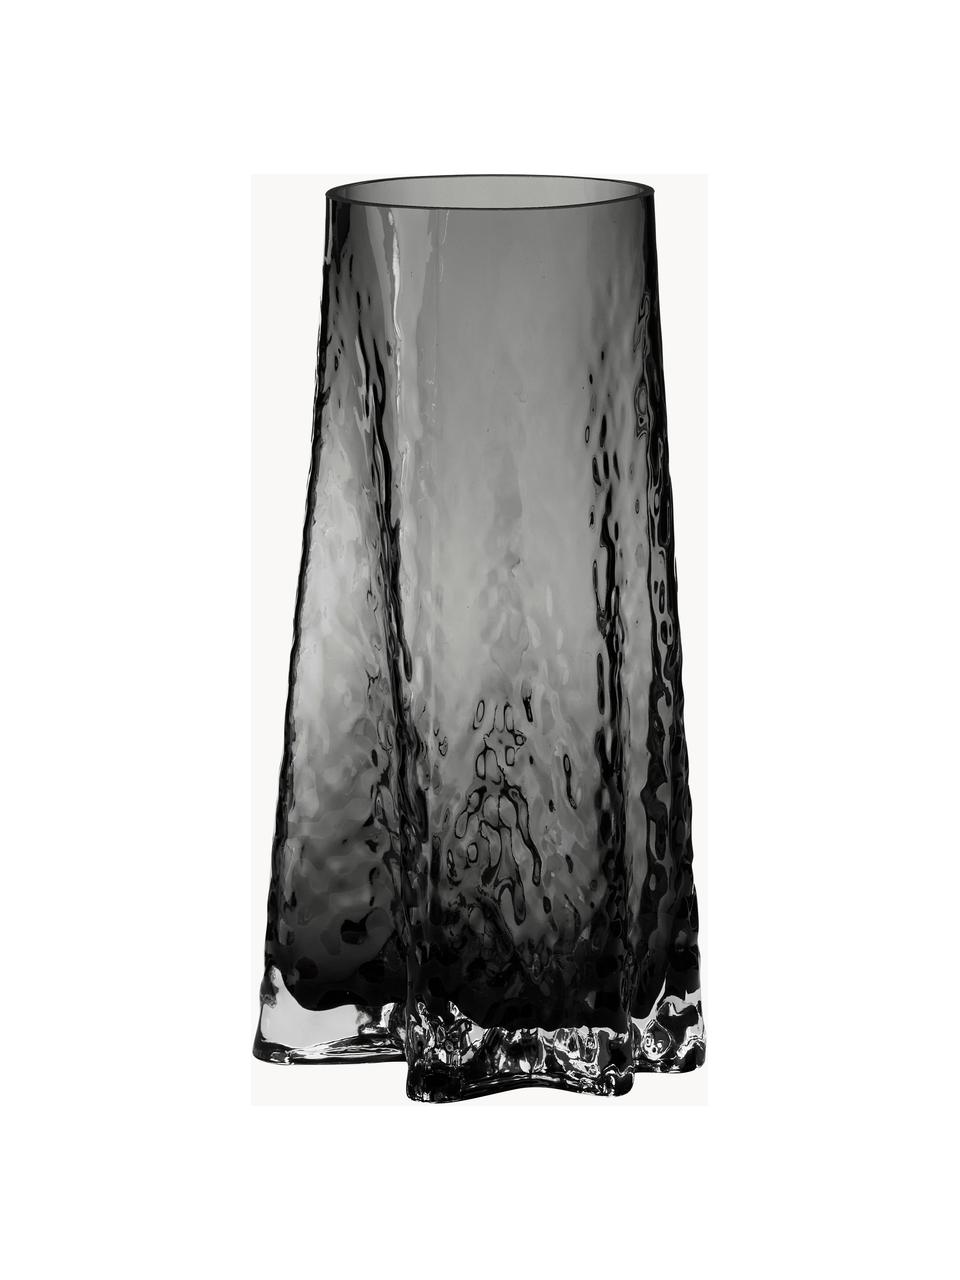 Mondgeblazen glazen vaas Gry met gestructureerde oppervlak, H 30 cm, Mondgeblazen glas, Antraciet, Ø 15 x H 30 cm